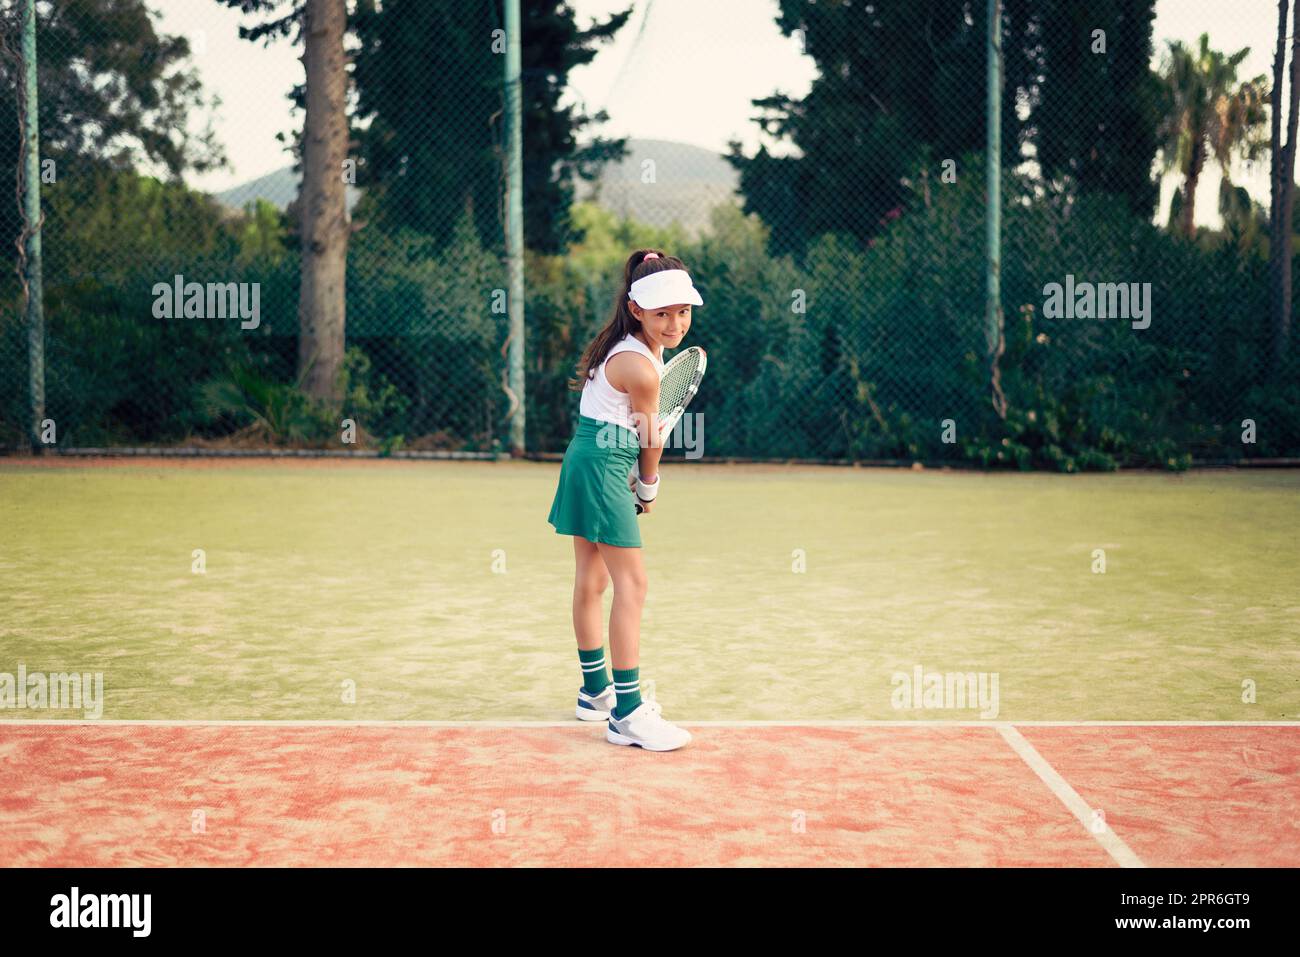 Junge Frau, Tennisspielerin mit grünem Rock, weißem Oberteil und Hut, die an einem sonnigen Tag Tennis auf einem Sandtennisplatz spielt Stockfoto